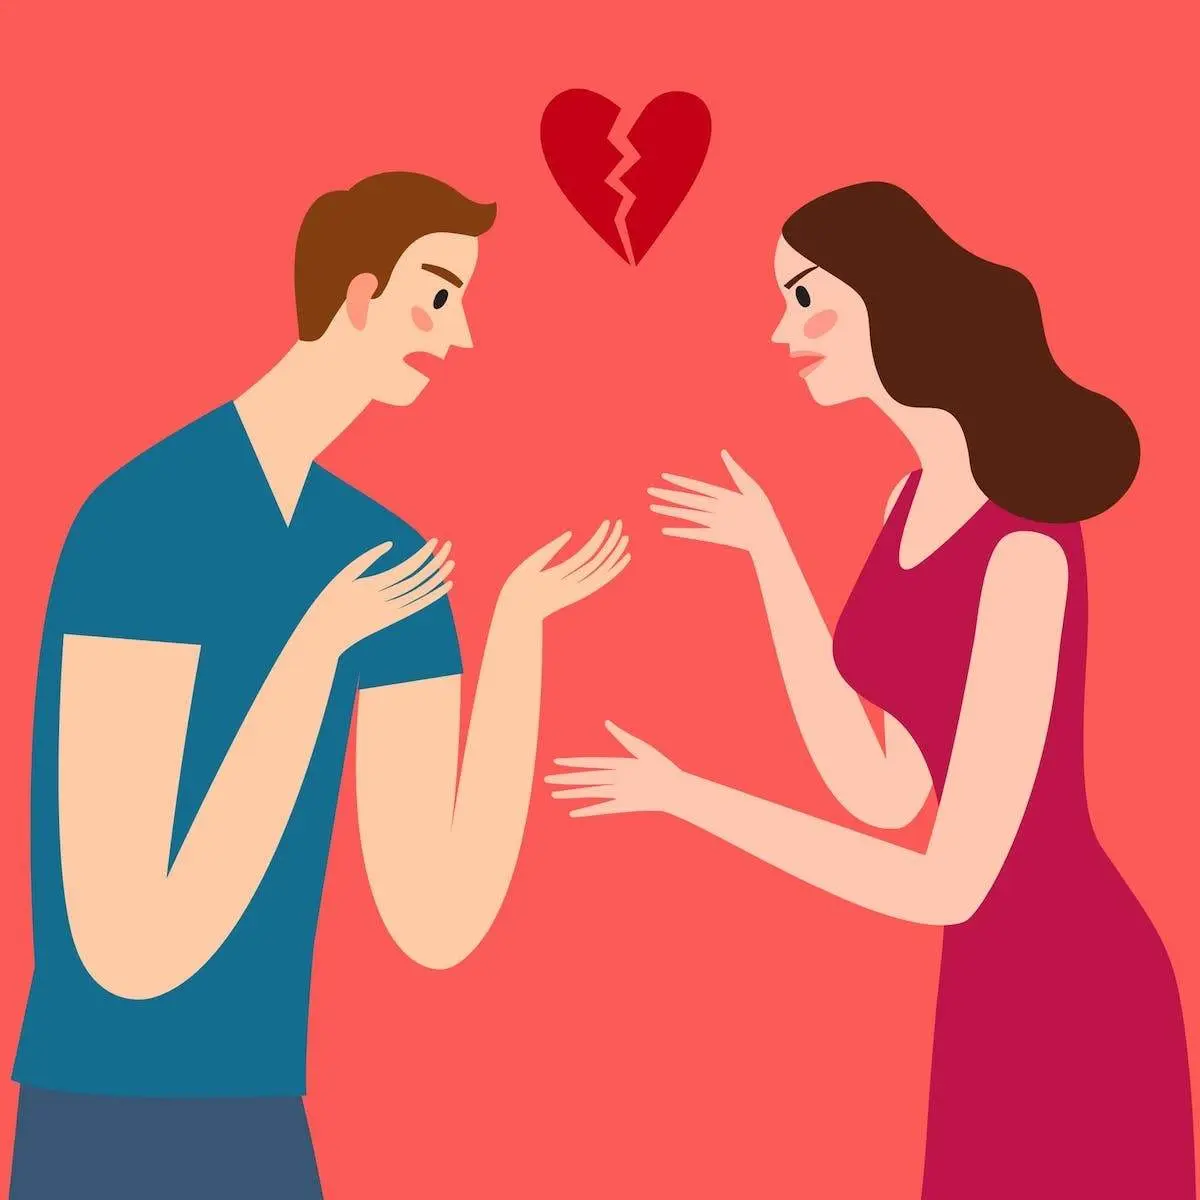 آیا به دنبال یک رابطه درست و پایدار هستید؟ | بررسی دلایل ناپایداری روابط